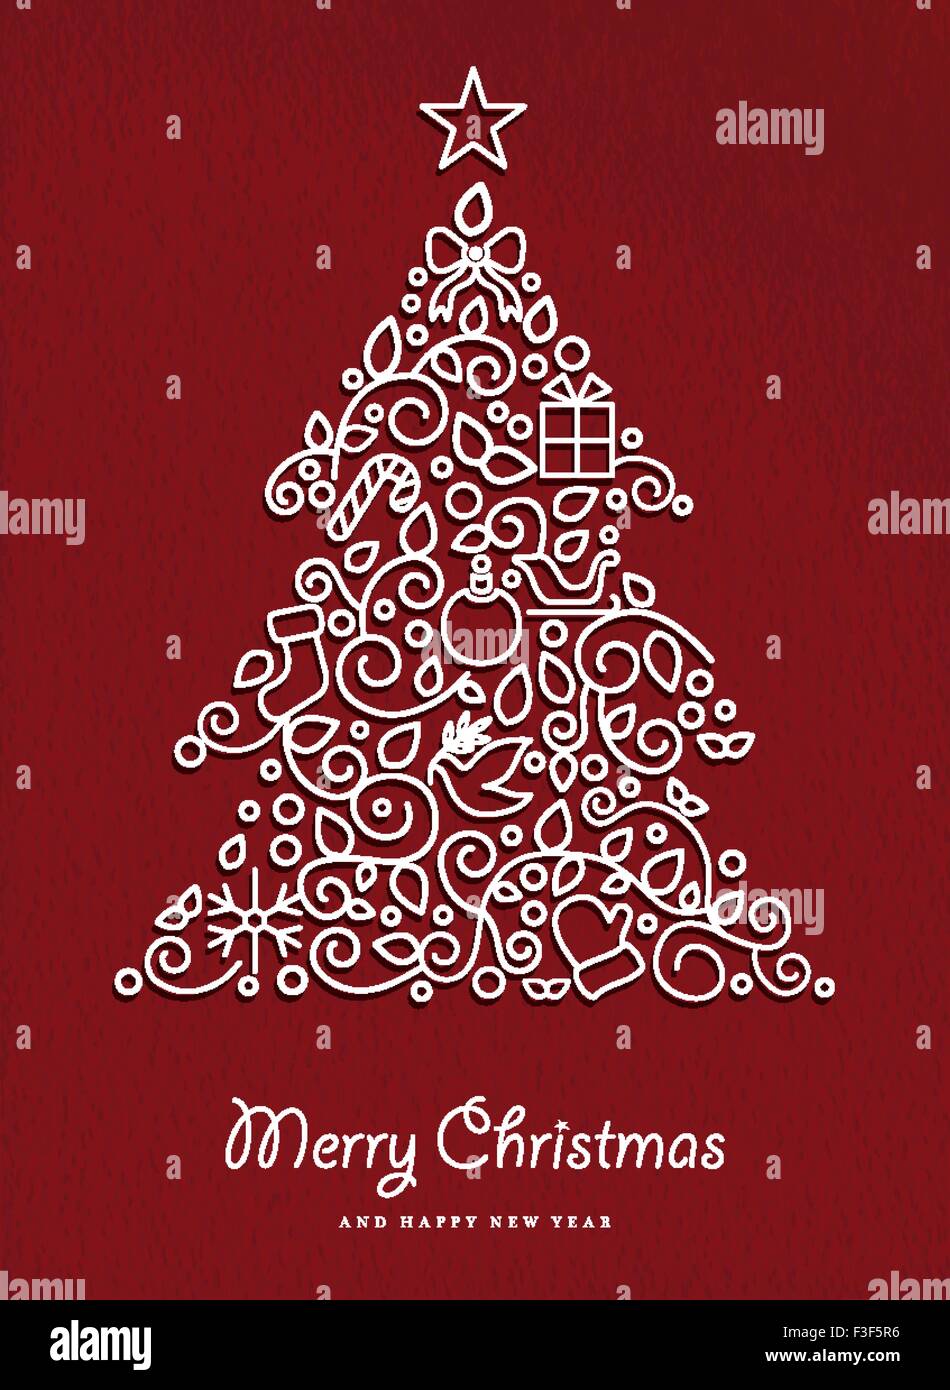 Buon Natale e felice anno nuovo pino realizzata in moderno stile di contorno con semplici ornamenti natalizi. Ideale per carta vacanze Illustrazione Vettoriale